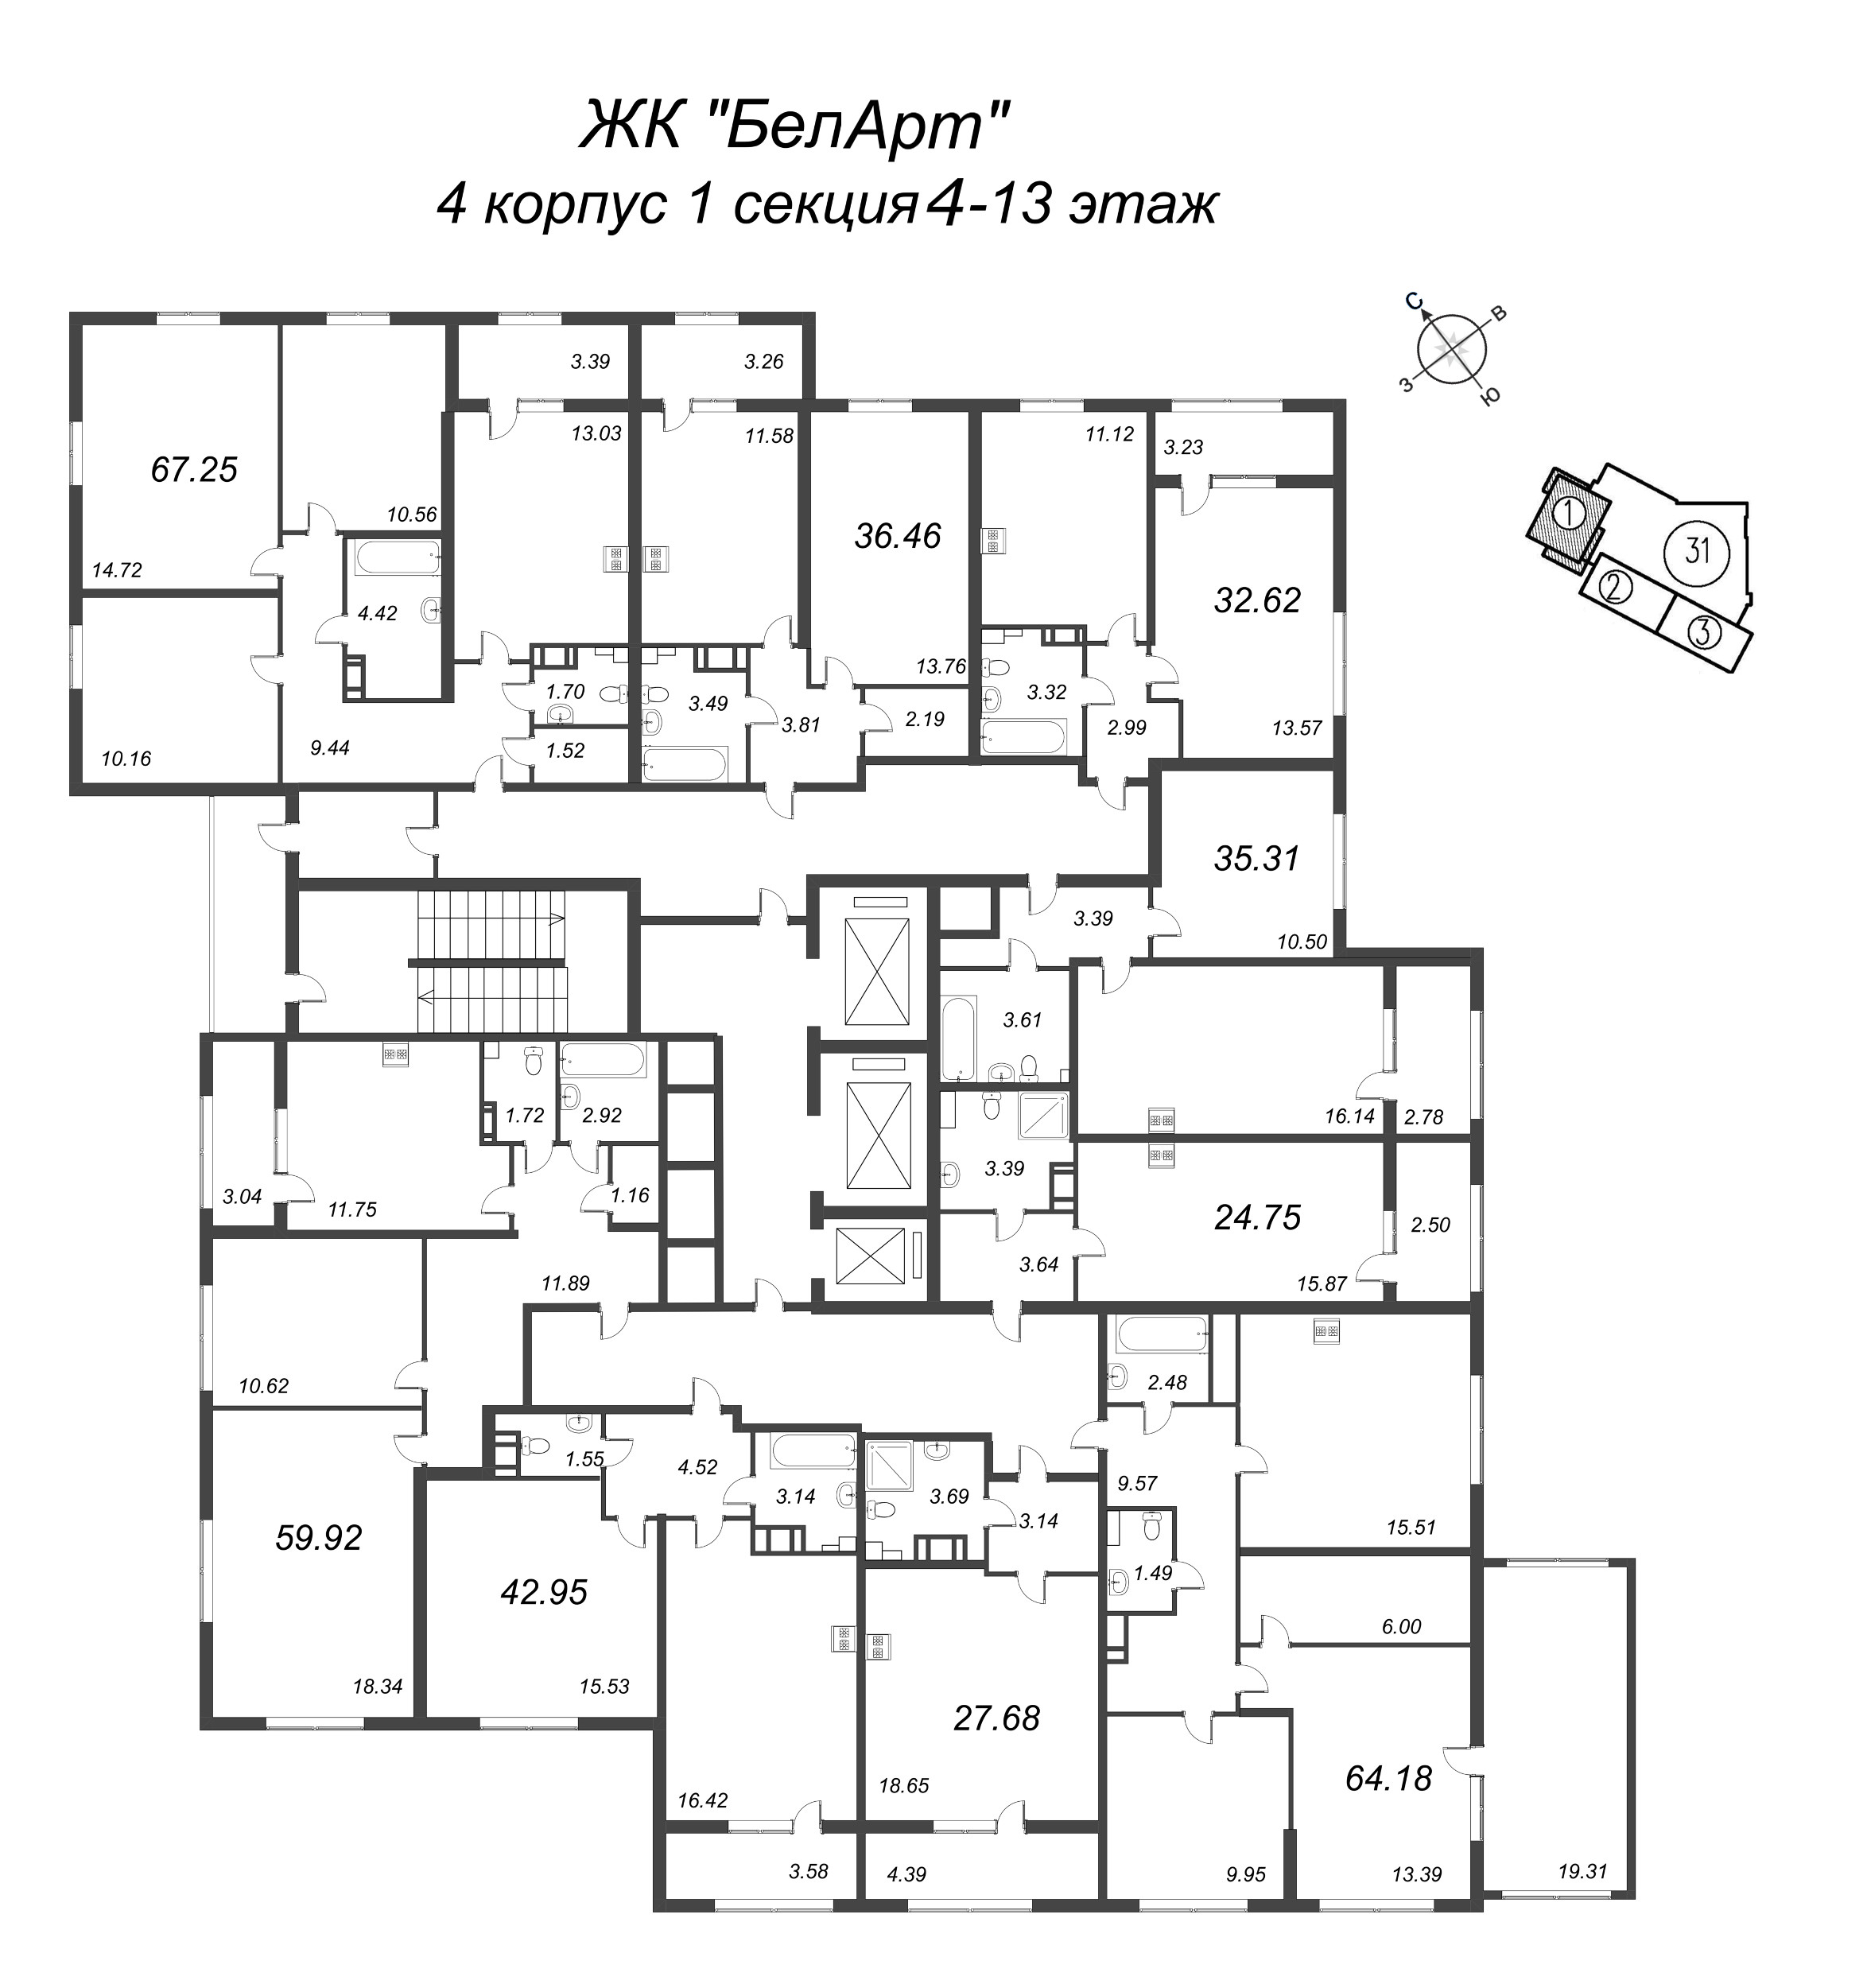 Квартира-студия, 24.75 м² в ЖК "БелАрт" - планировка этажа